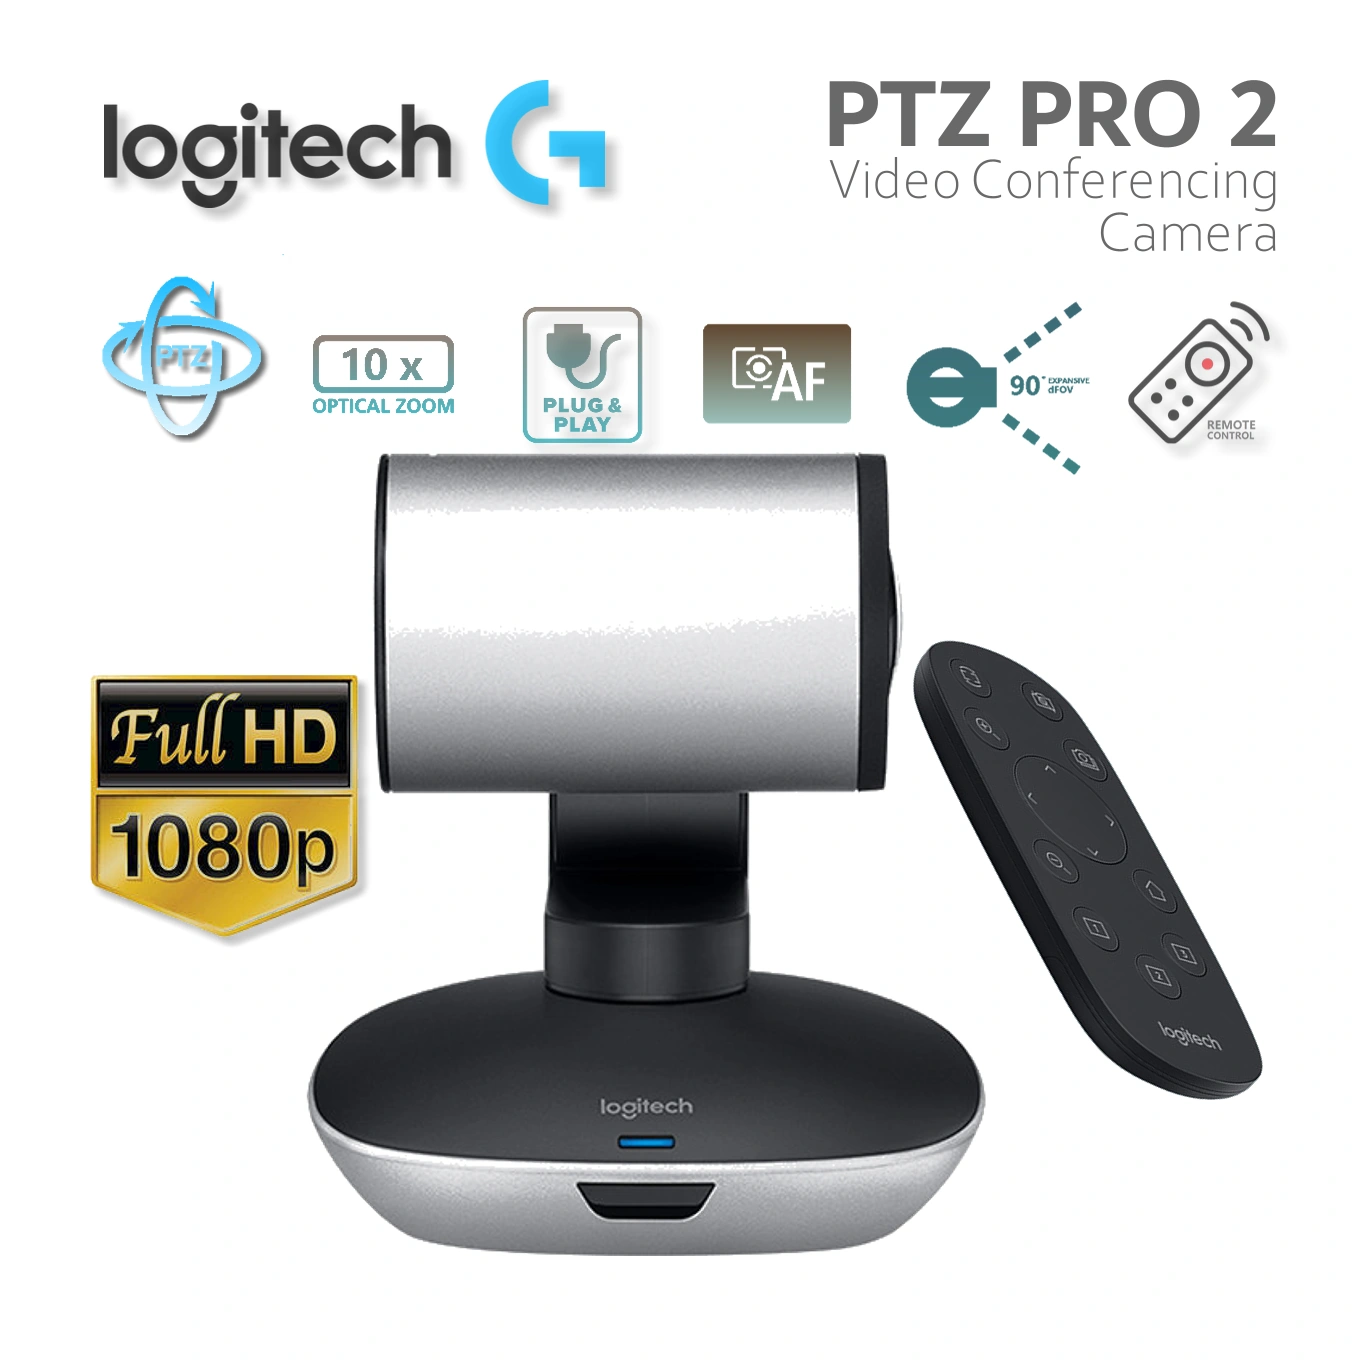 Cámara de videoconferencia Logitech PTZ Pro 2 - Online Business